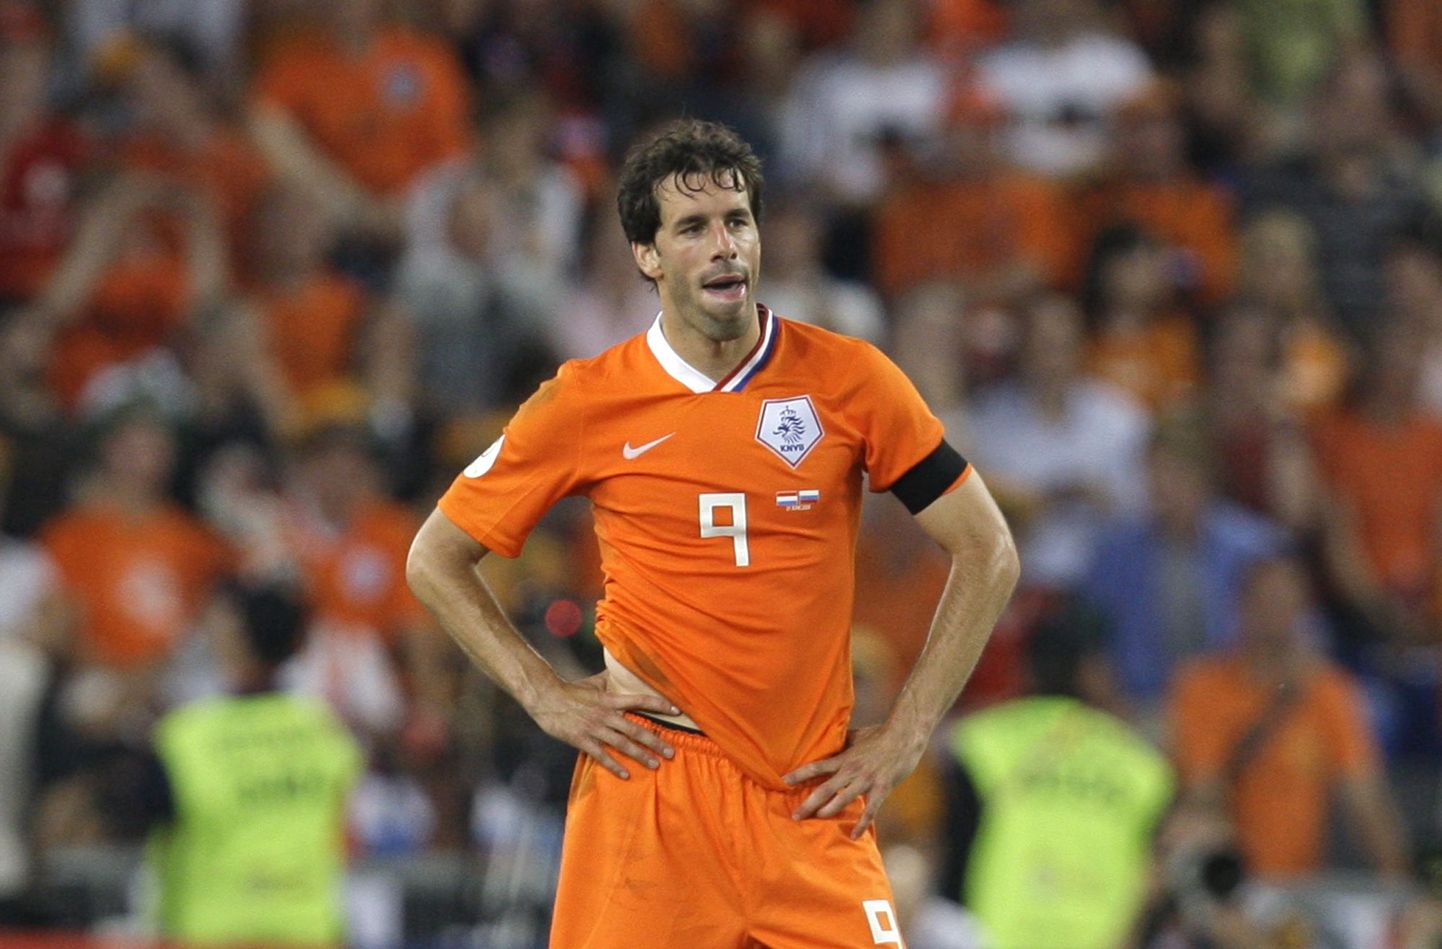 Hollandi jalgpallilegendist Ruud van Nistelrooy'st saab Hollandi koondise juures Guus Hiddinki abiline.